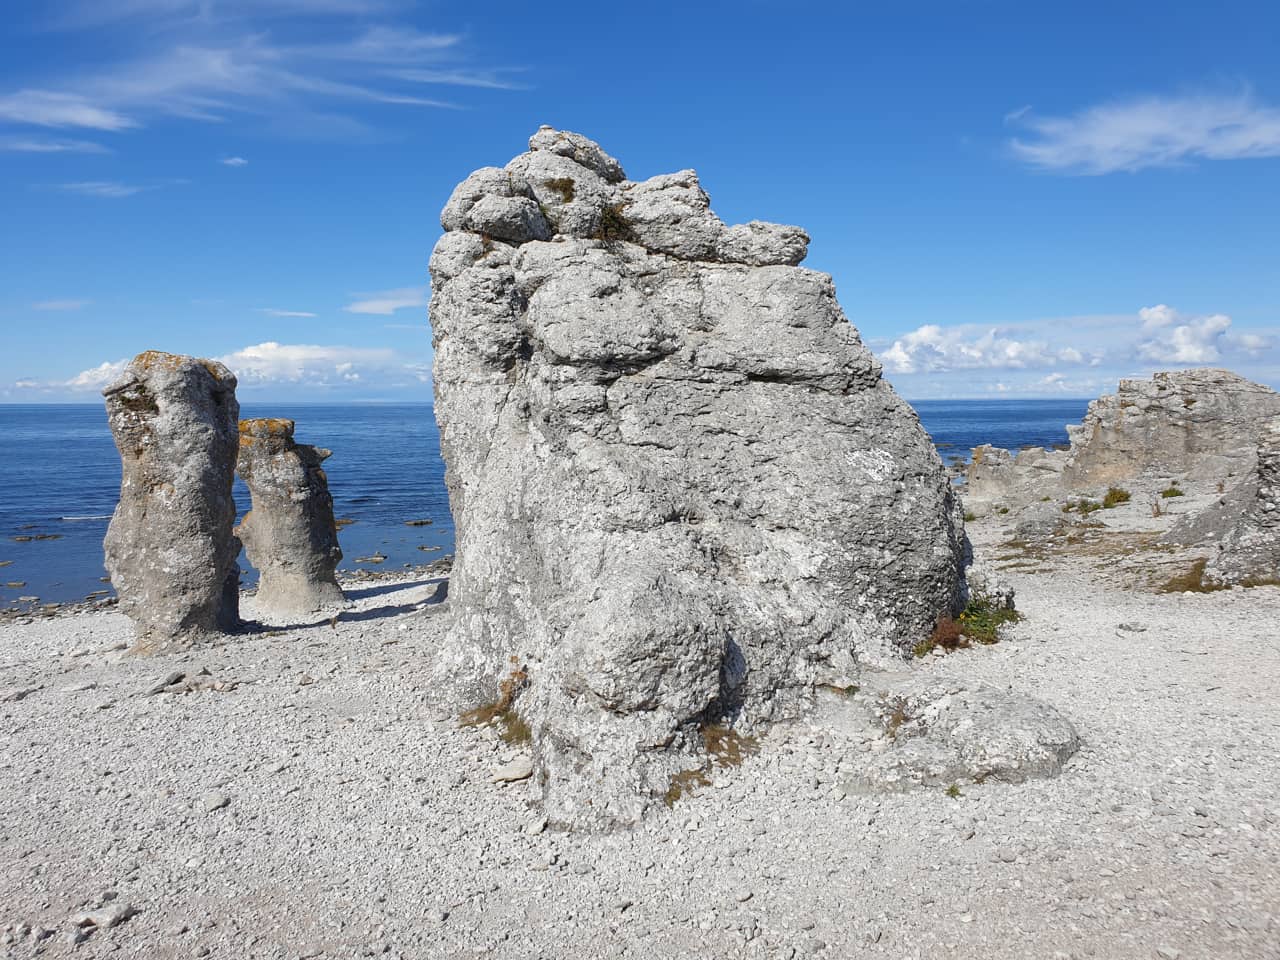 Kalksteinsäulen namens Rauken auf der schwedischen Insel Gotland